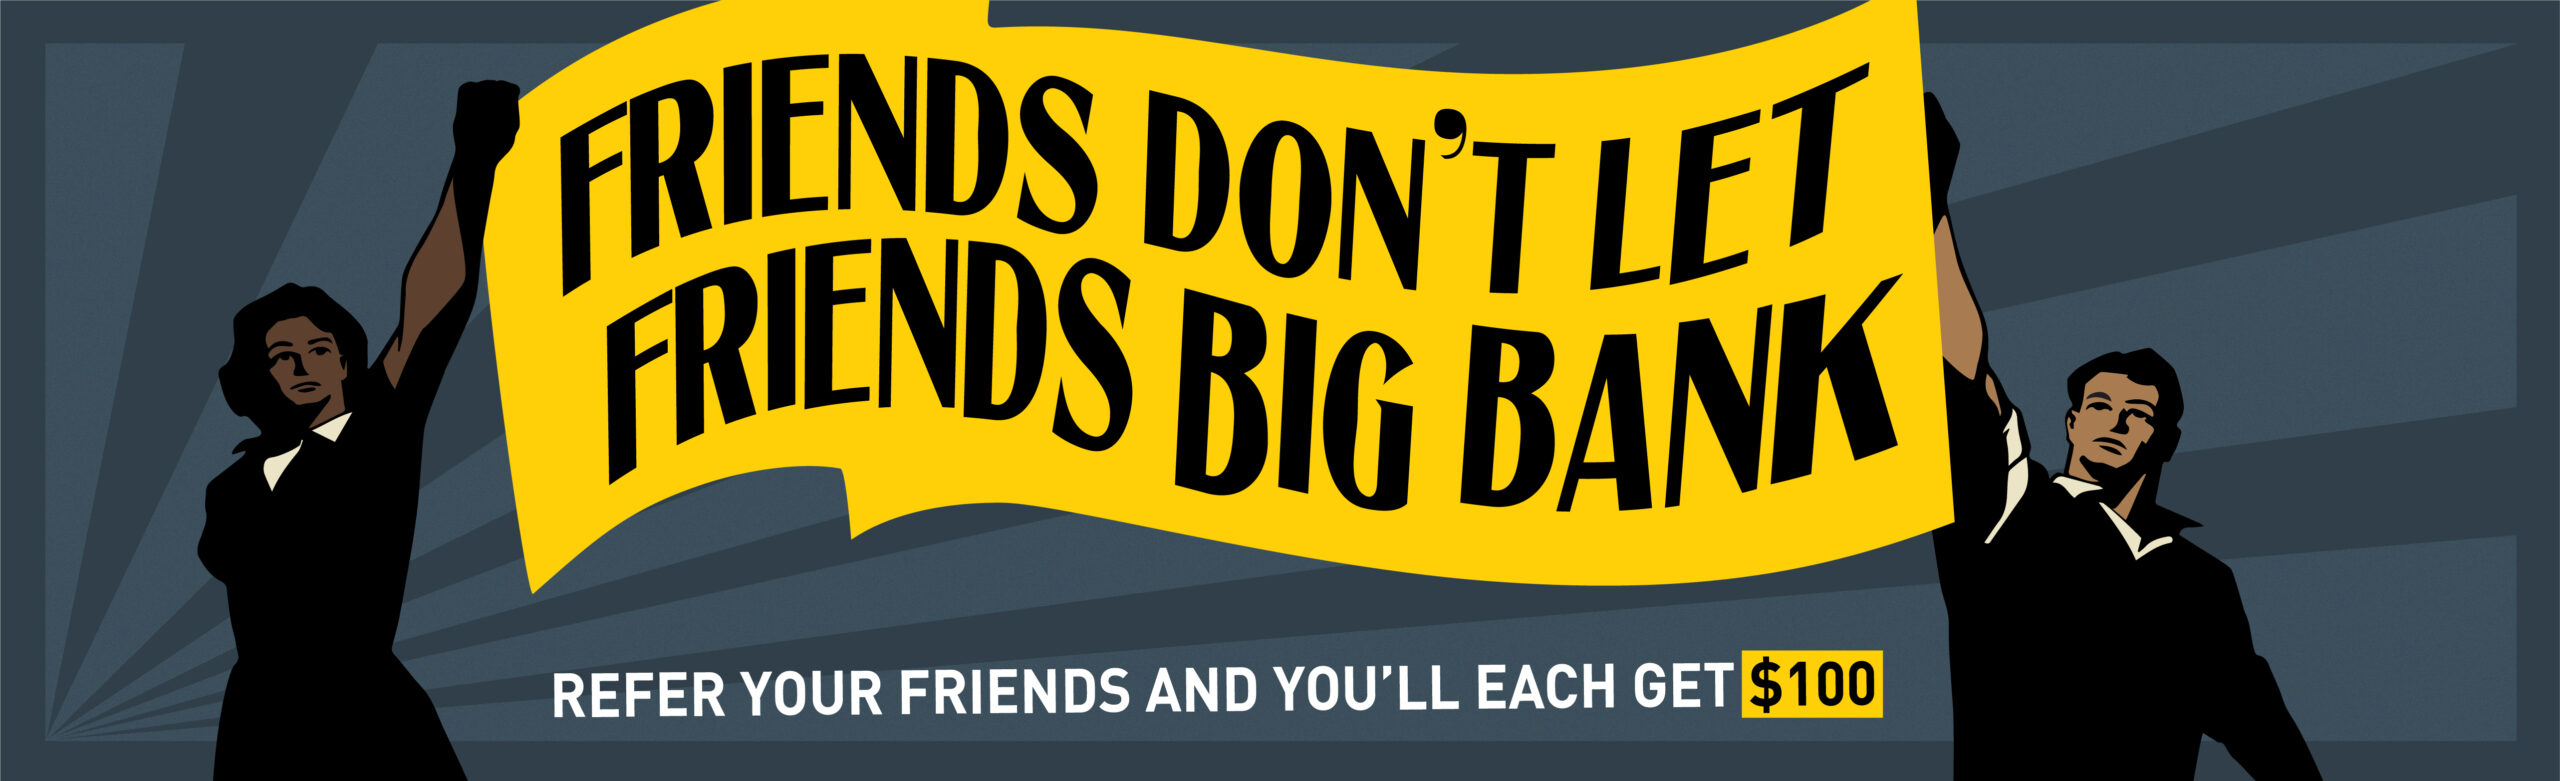 Friends dont let friends Big Bank